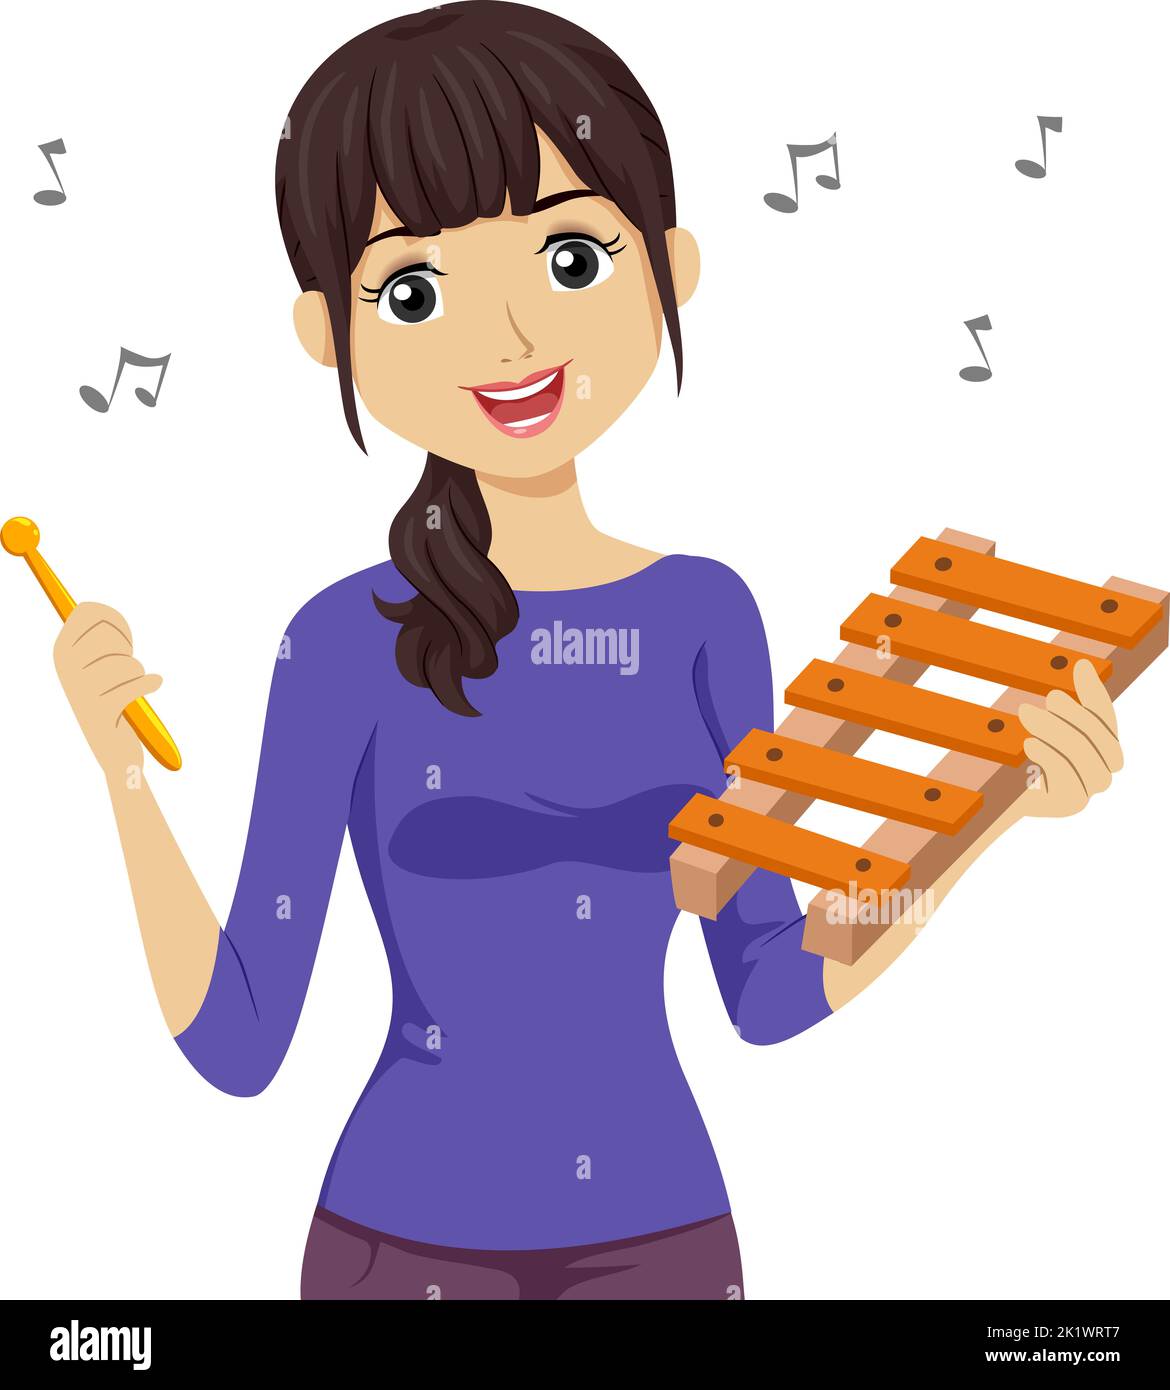 Illustrazione di una ragazza teenager che gioca a uno strumento Xylofone con note musicali che galleggiano intorno Foto Stock